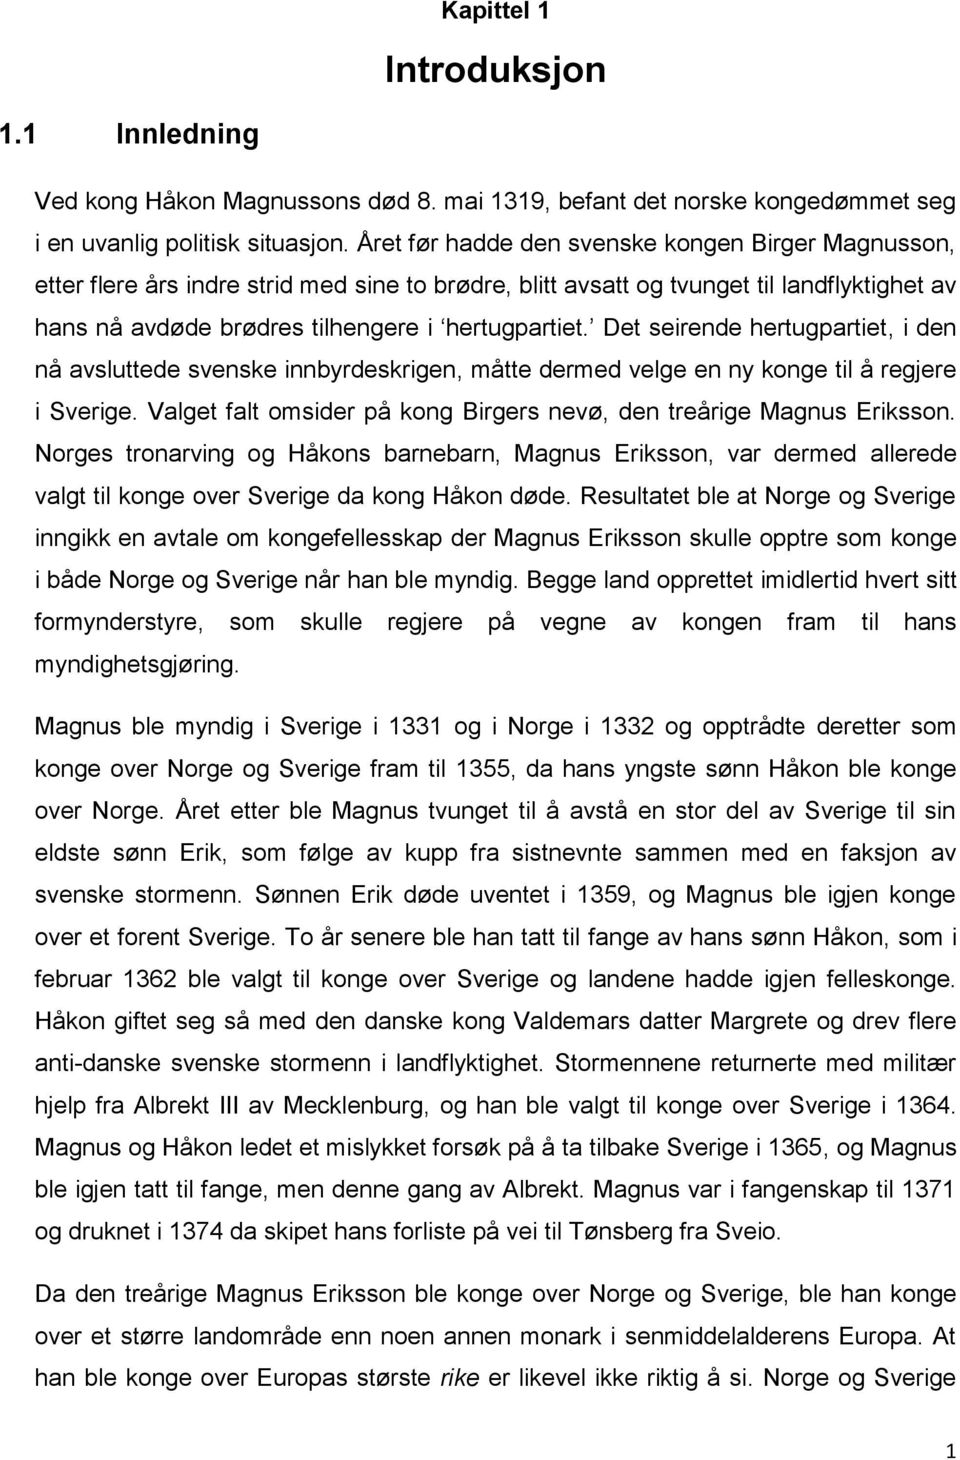 Det seirende hertugpartiet, i den nå avsluttede svenske innbyrdeskrigen, måtte dermed velge en ny konge til å regjere i Sverige. Valget falt omsider på kong Birgers nevø, den treårige Magnus Eriksson.